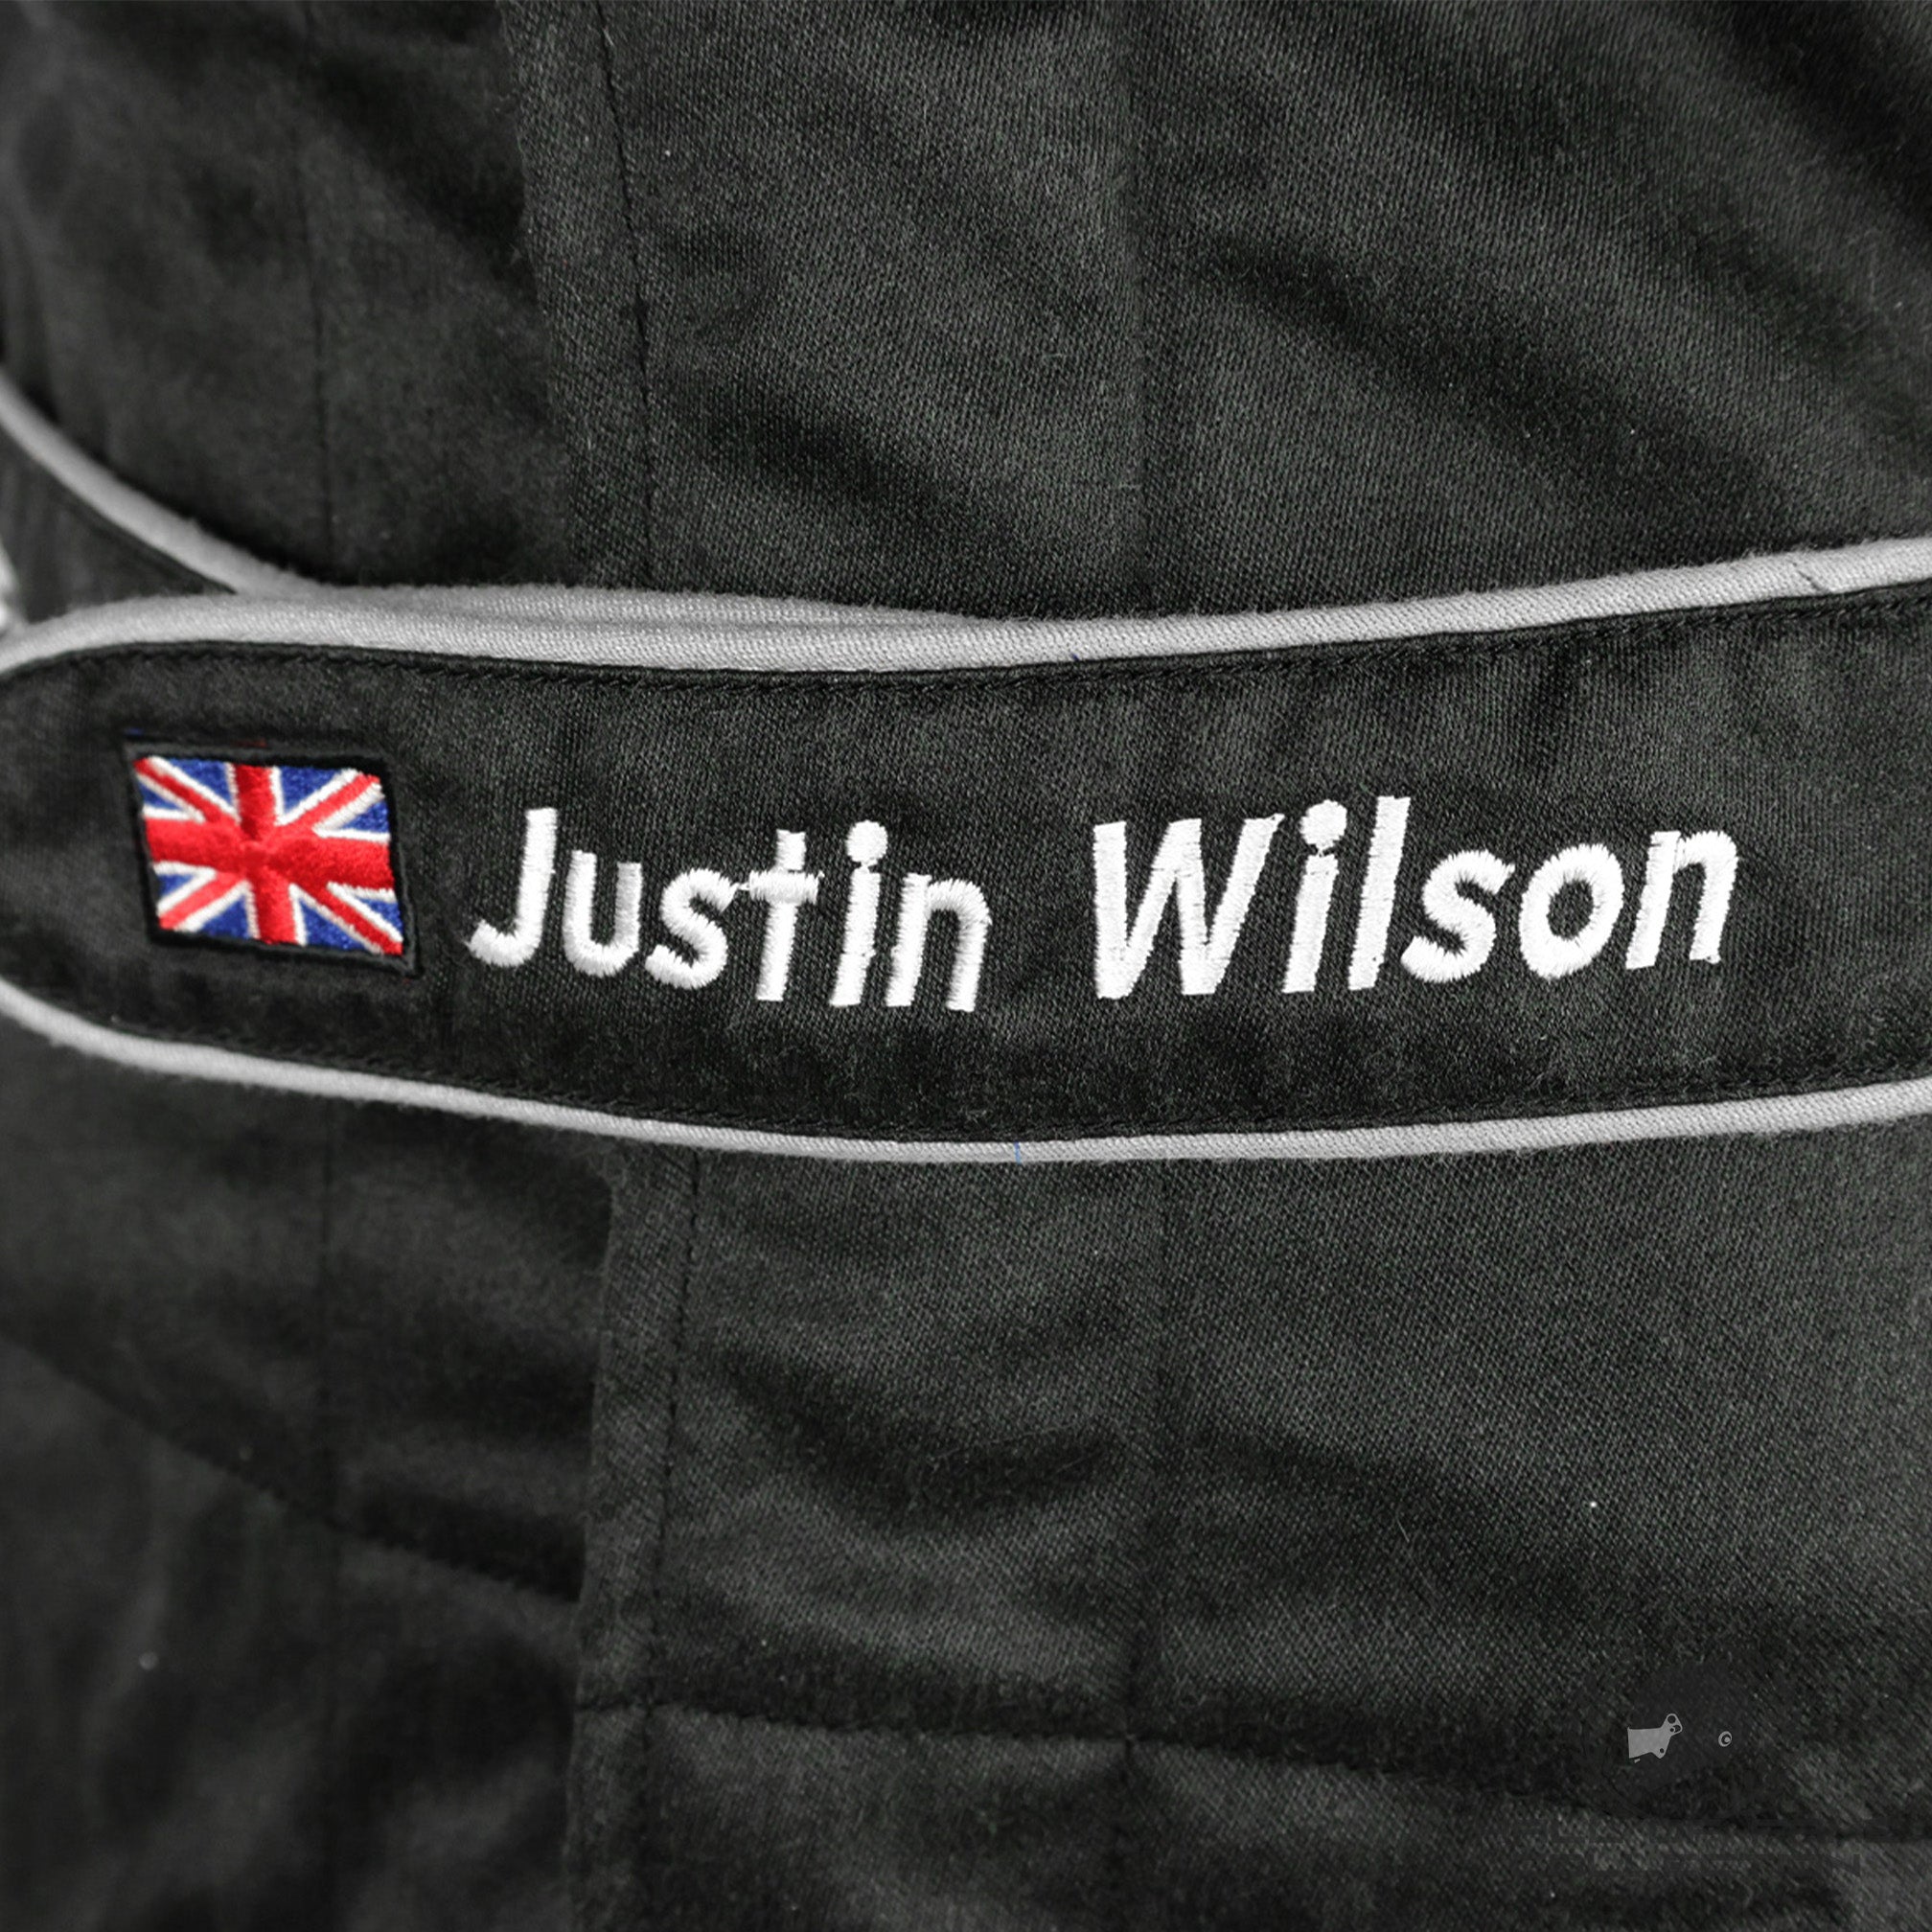 2003 Justin Wilson Very Rare Rookie Minardi F1 Suit